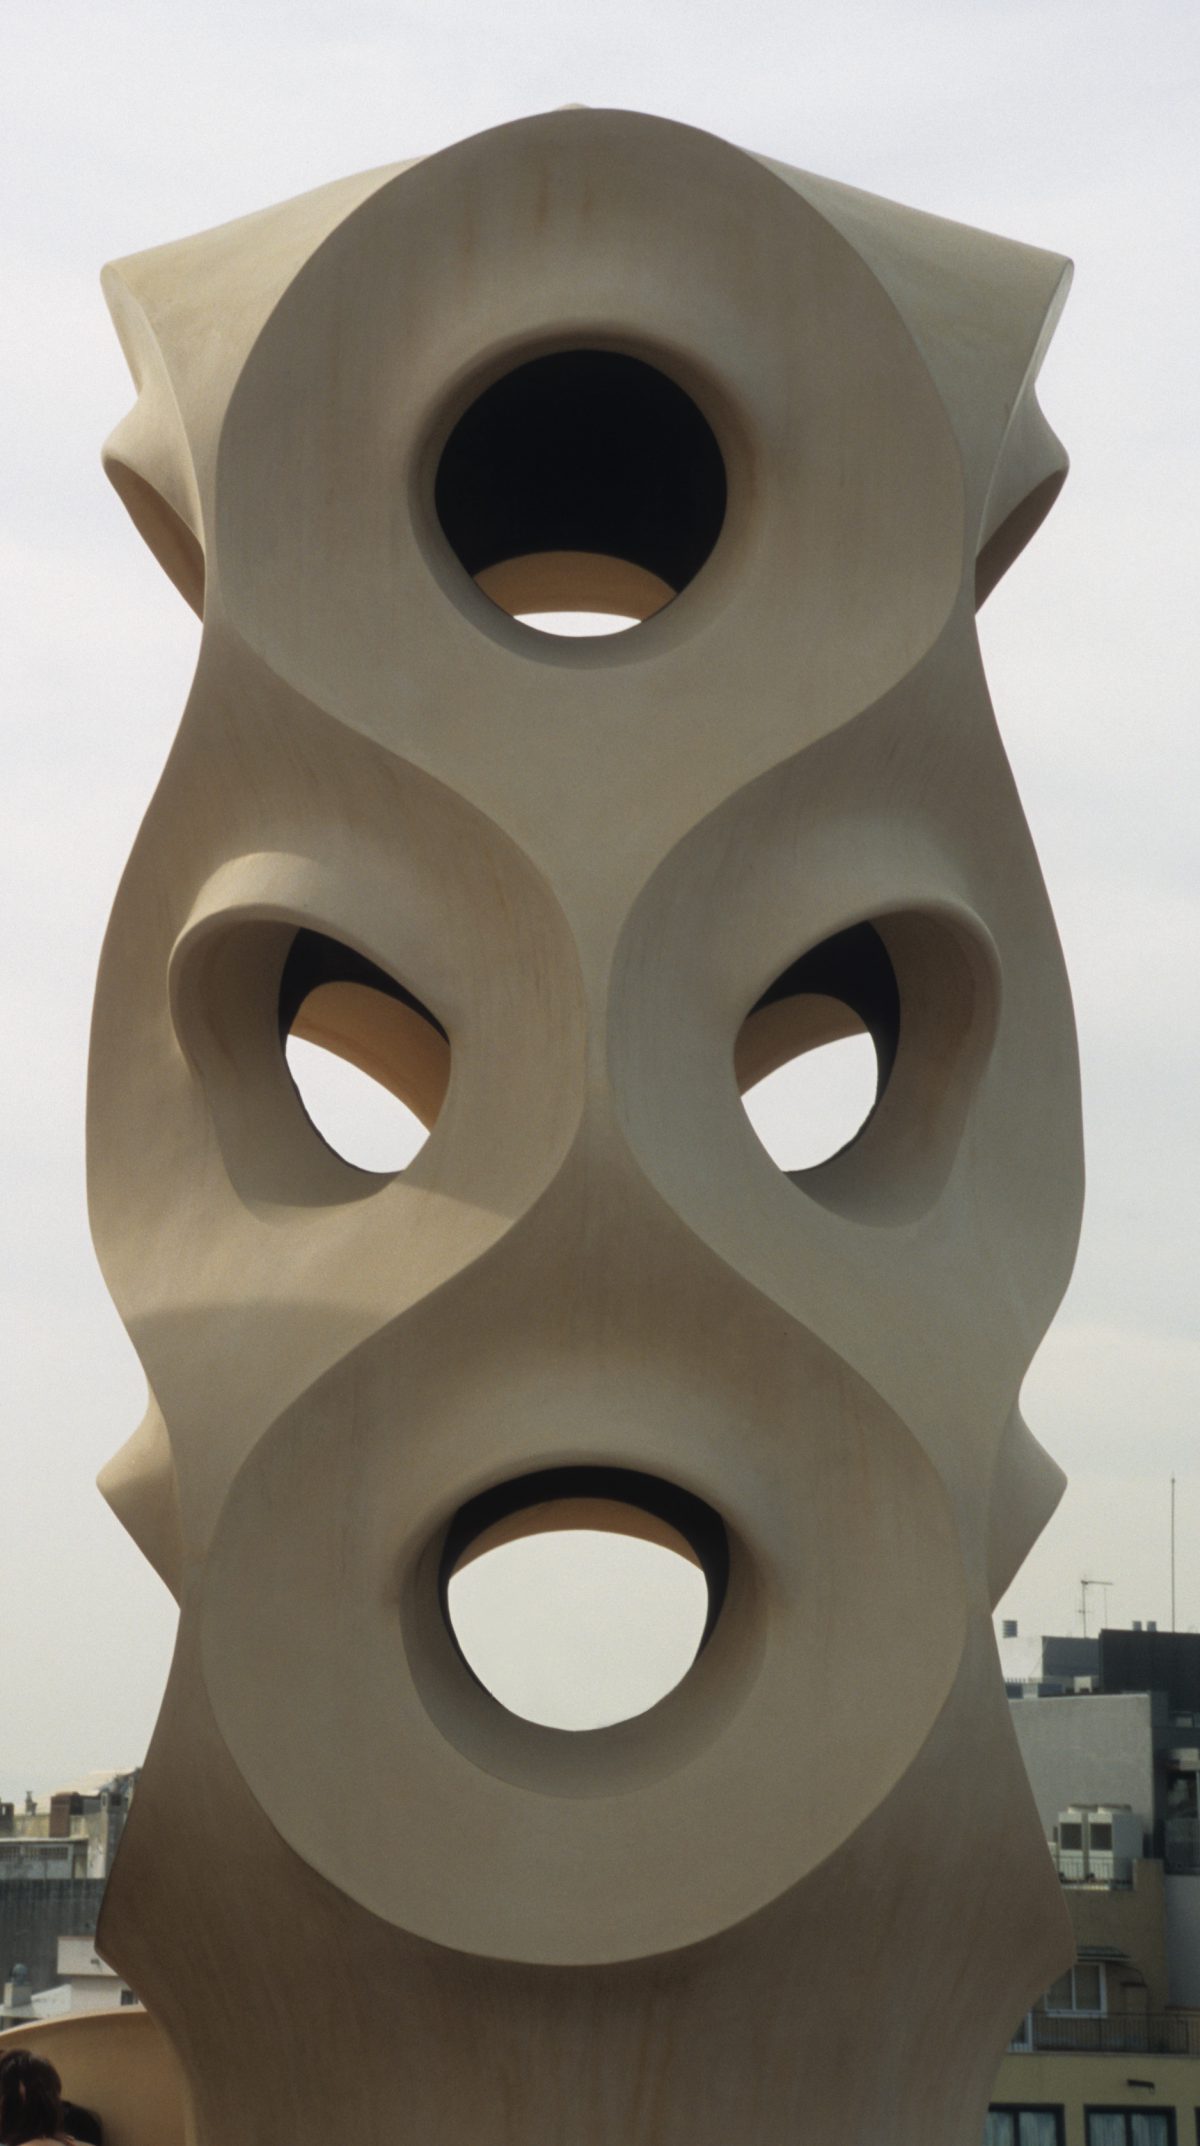 Casa Milà - Gaudí chimneys, art, chimney, sculpture